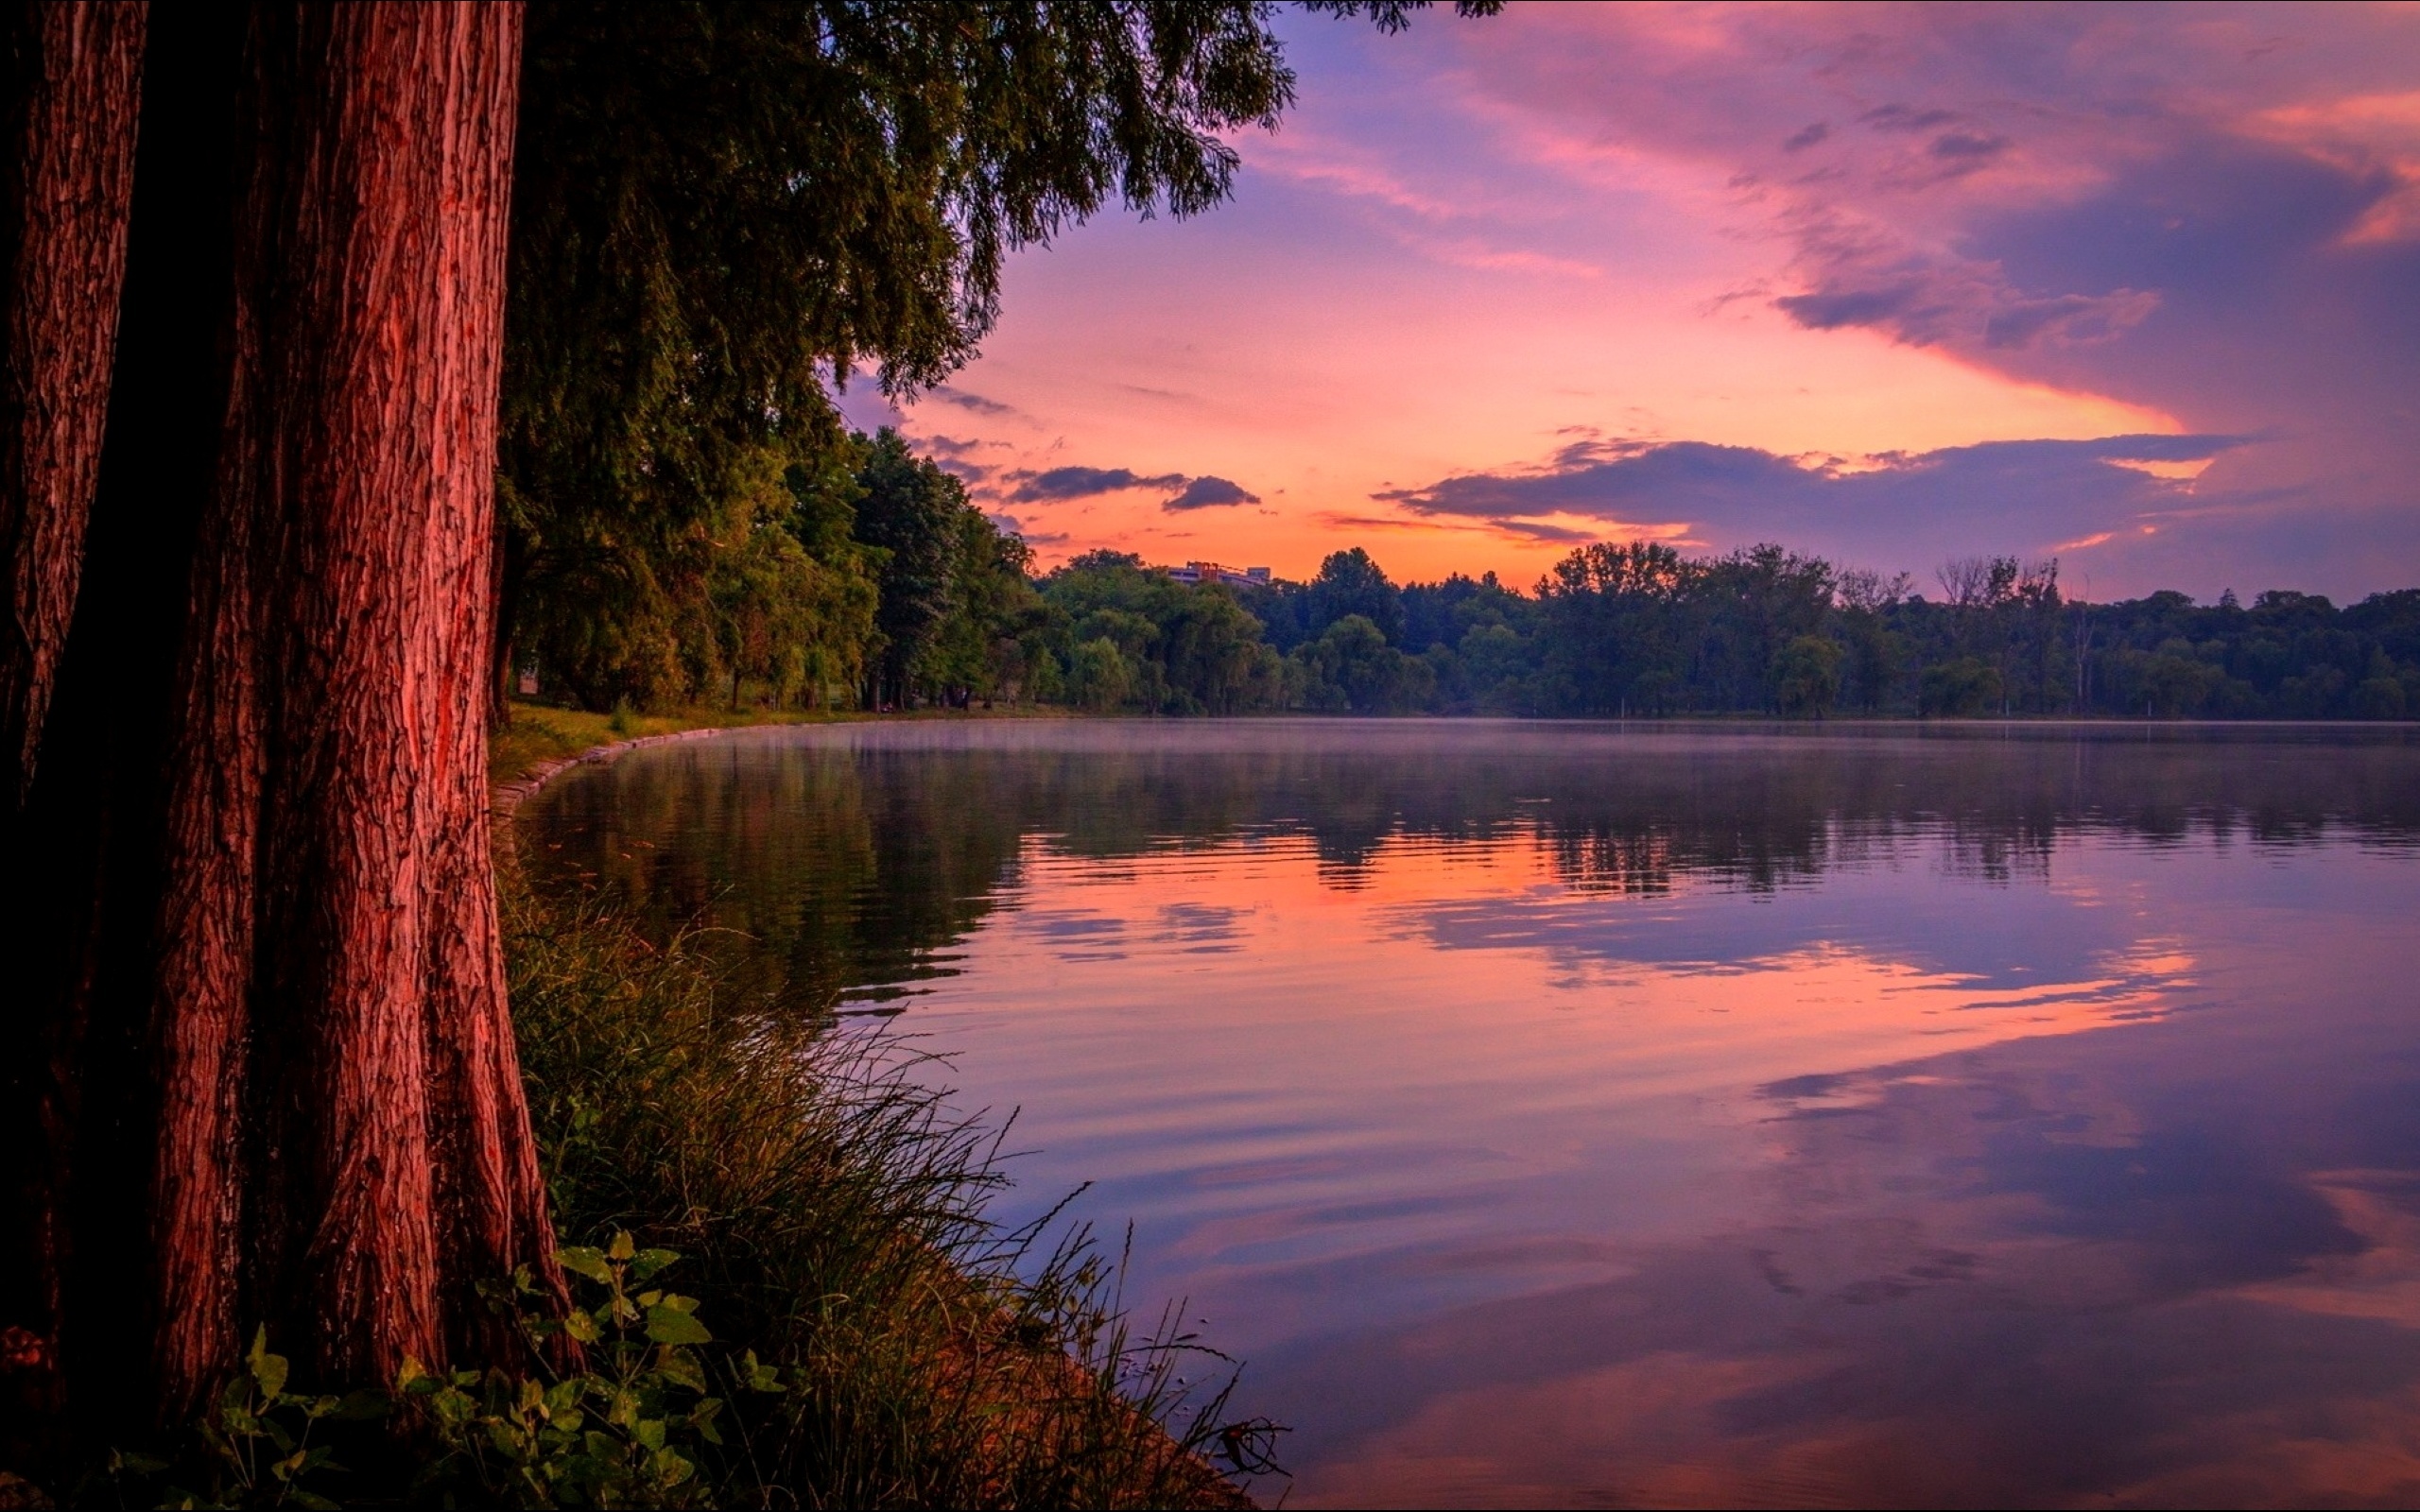 Картинки на заставку. Природа вечер. Пейзаж вечер. Озеро в лесу. Закат на озере.